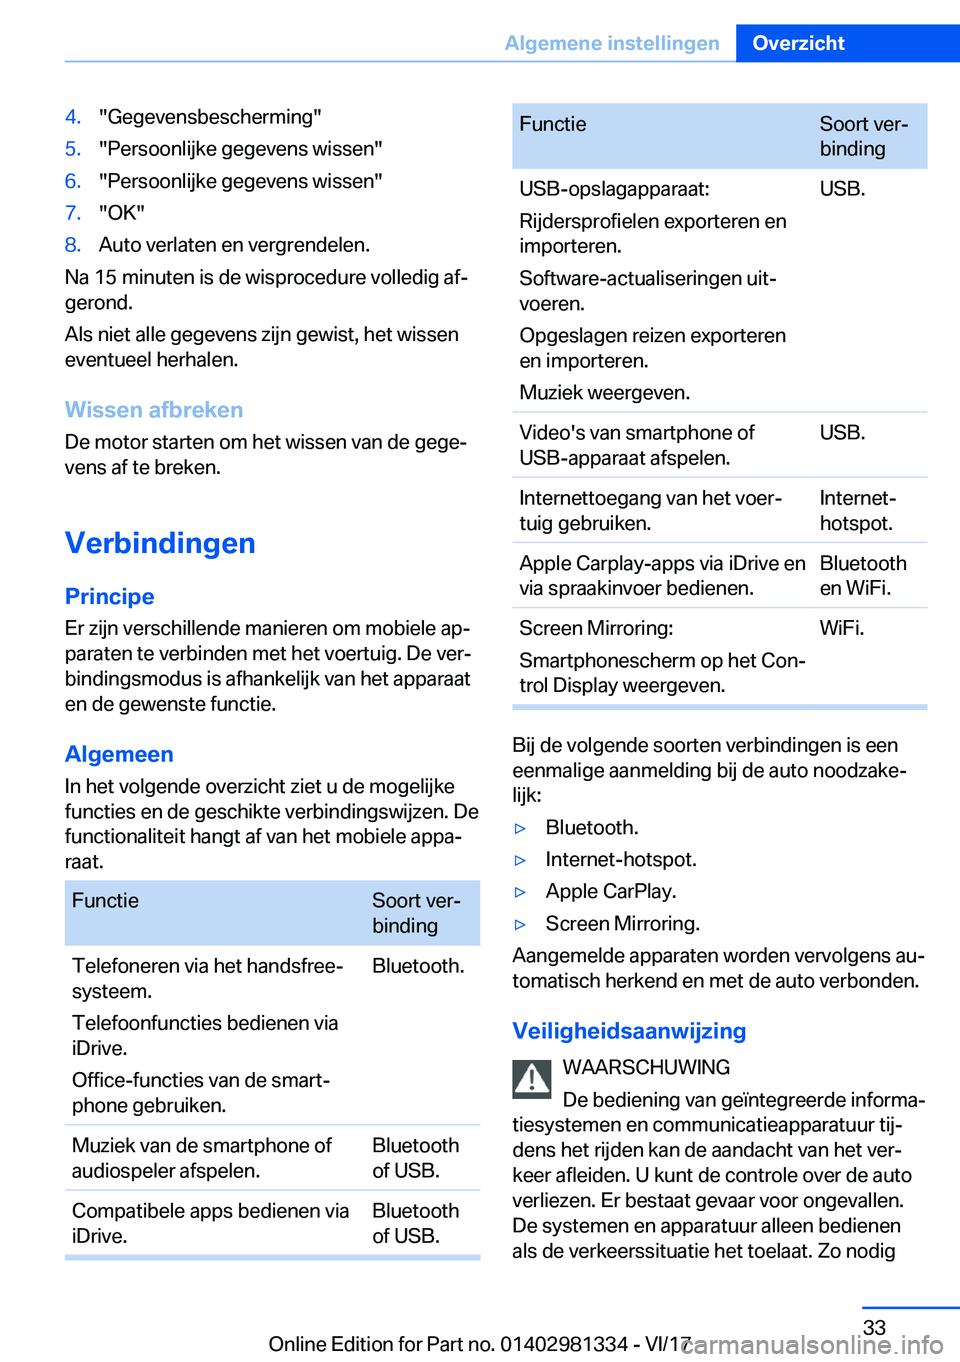 BMW X4 2018  Instructieboekjes (in Dutch) �4�.�"�G�e�g�e�v�e�n�s�b�e�s�c�h�e�r�m�i�n�g�"�5�.�"�P�e�r�s�o�o�n�l�i�j�k�e� �g�e�g�e�v�e�n�s� �w�i�s�s�e�n�"�6�.�"�P�e�r�s�o�o�n�l�i�j�k�e� �g�e�g�e�v�e�n�s� �w�i�s�s�e�n�"�7